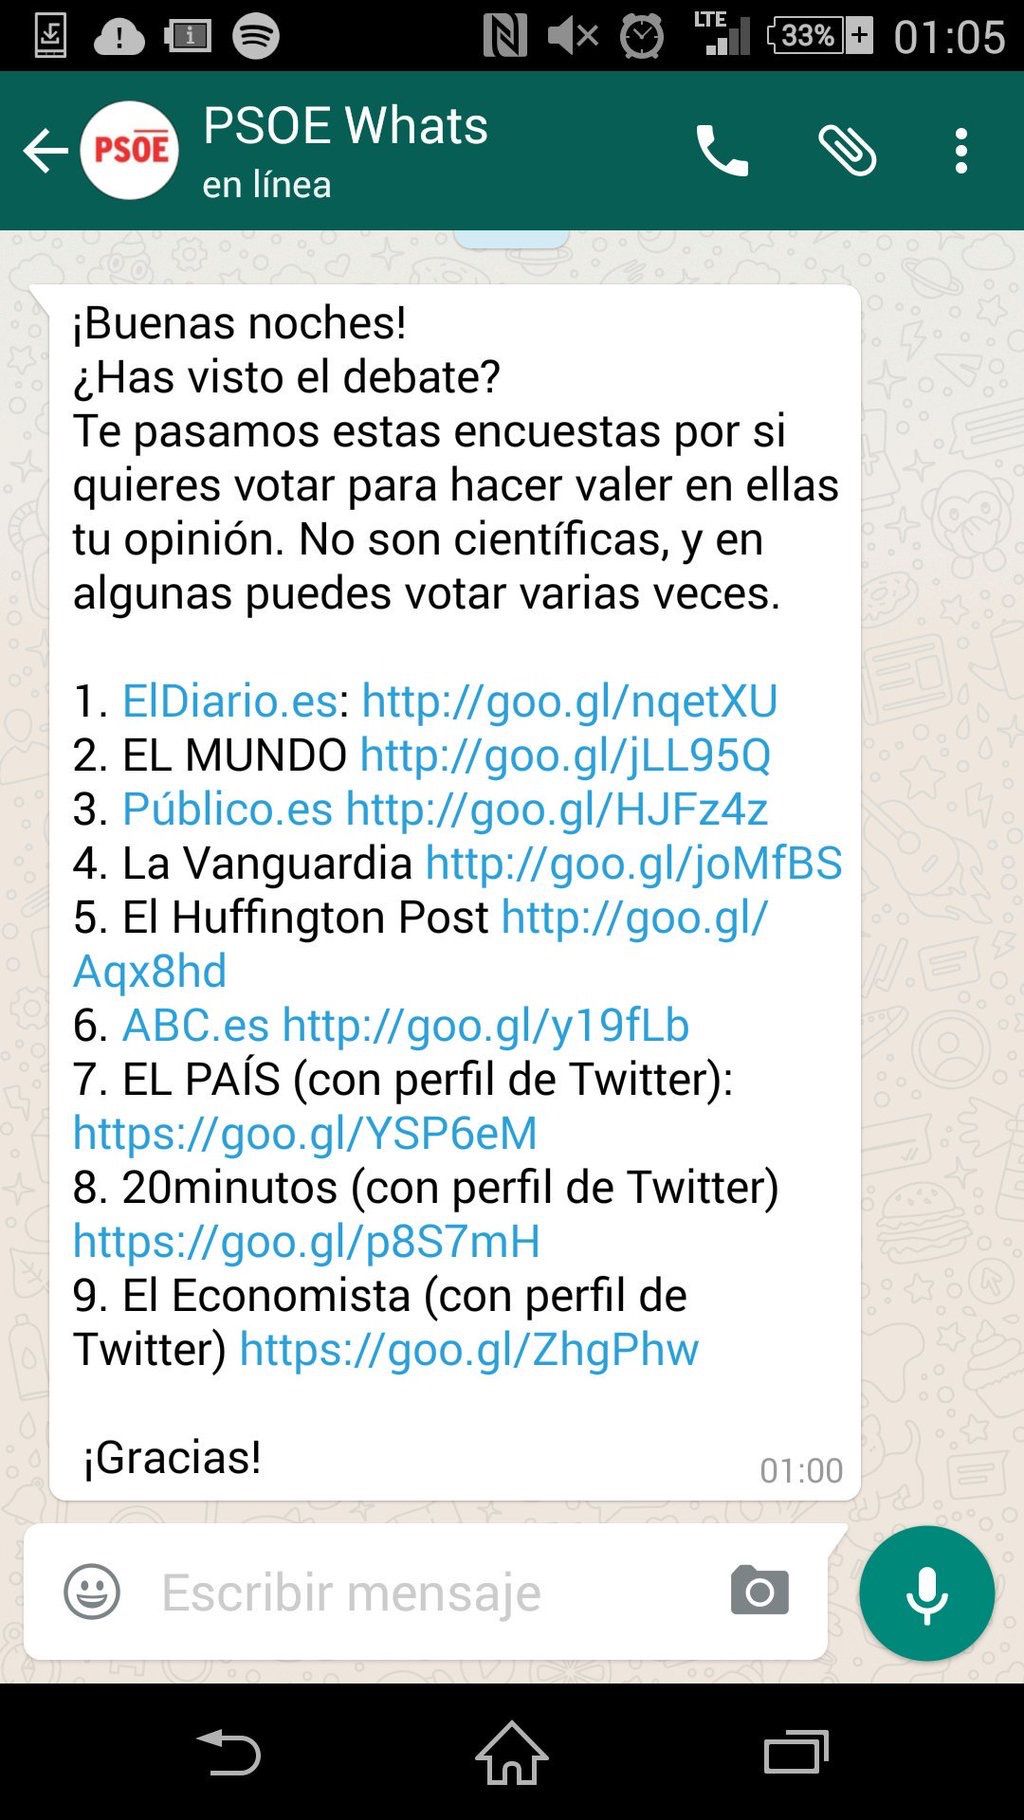 El PSOE t'ha enviat un WhatsApp